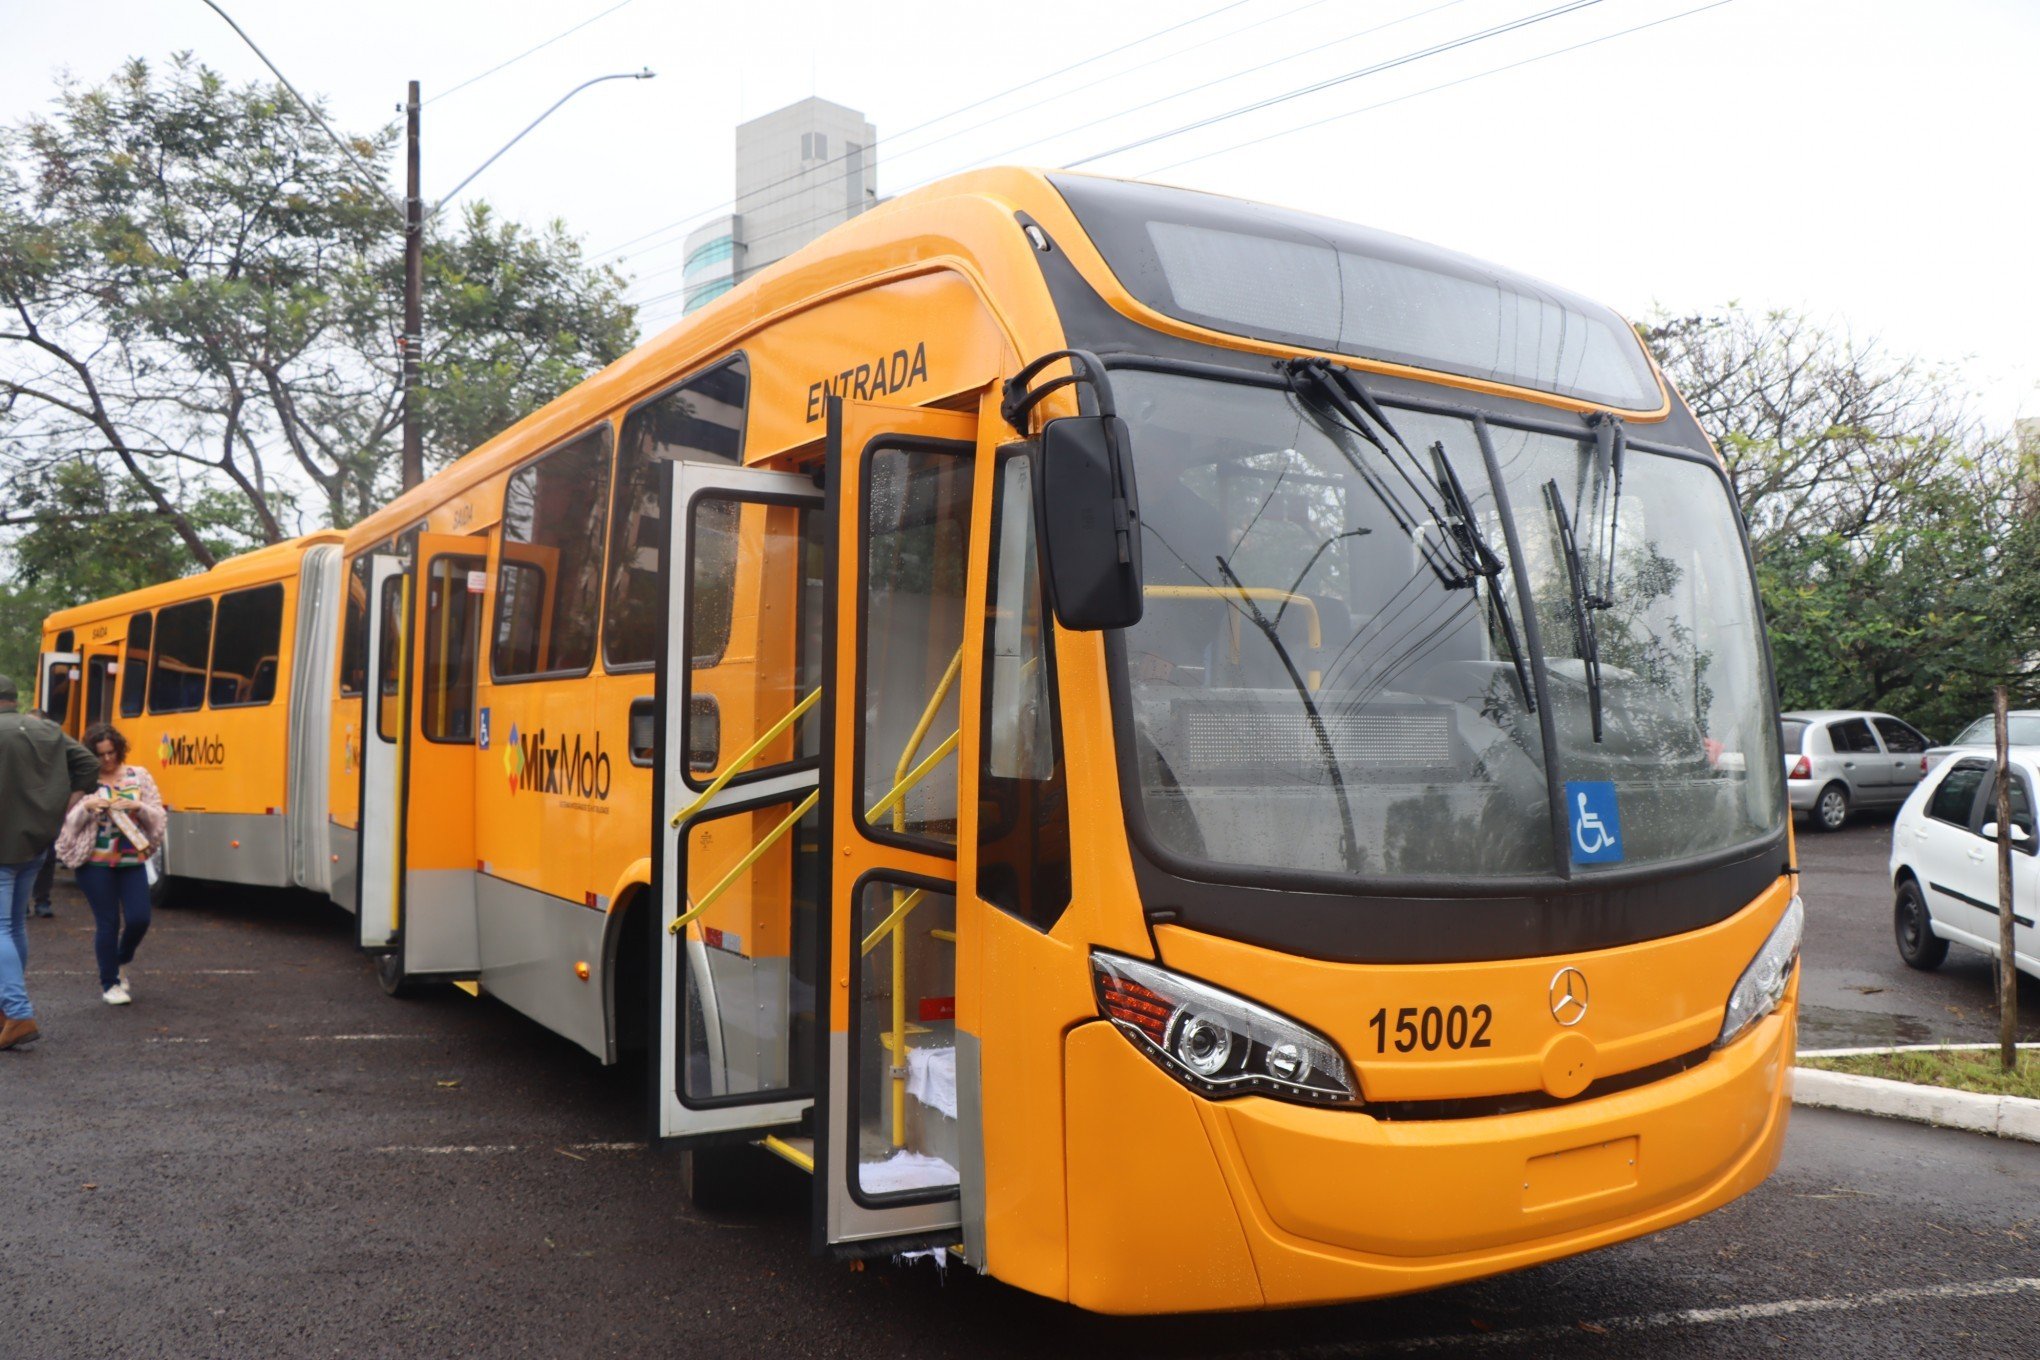 NOVO HAMBURGO: Cartão com crédito para os novos ônibus já está disponível para venda; veja os locais